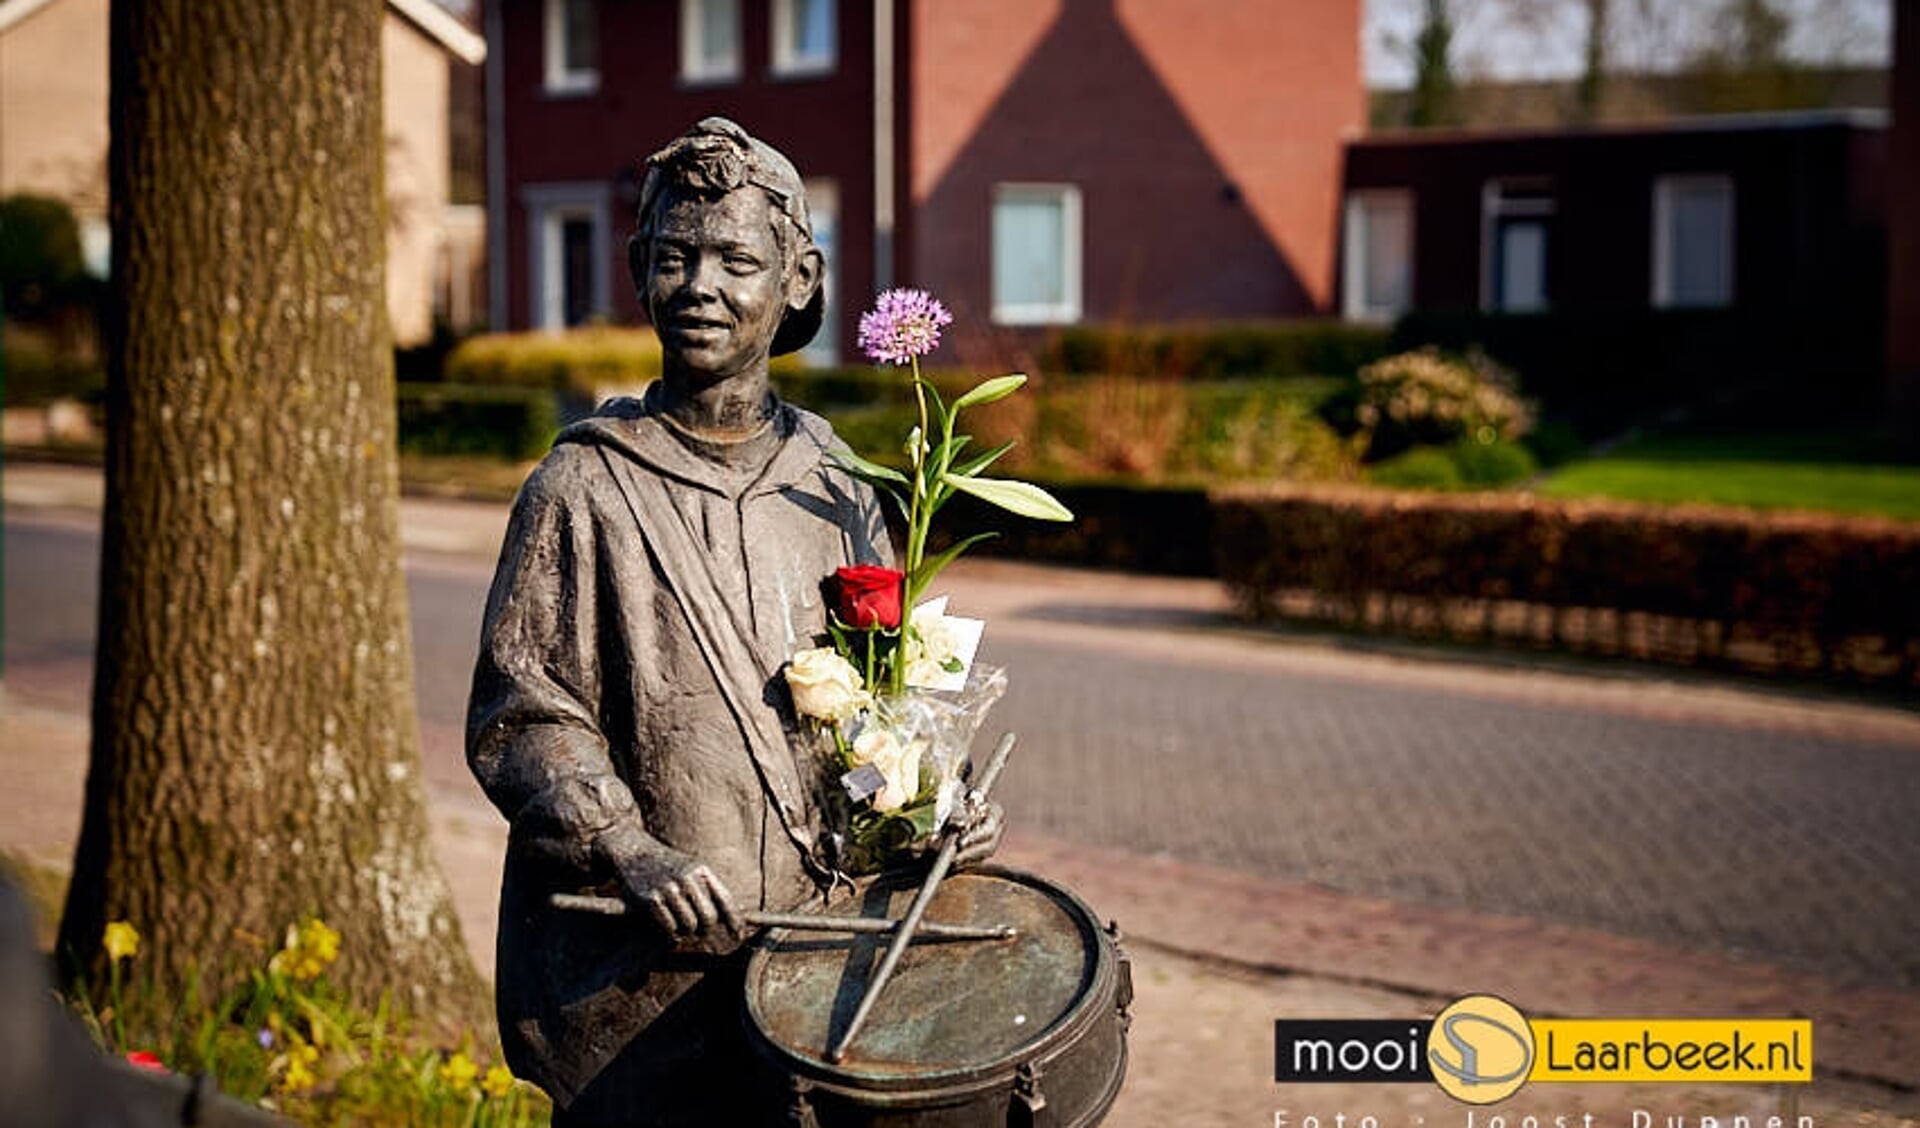 Bij het kunstwerk 'Toekomst door samenspel' aan het Servaassplein in Lieshout zijn veel bloemen gelegd vanwege het overlijden van de 29-jarige (uit Lieshout afkomstige) Guus Konings. Het beeld van de jonge tamboer is naar zijn jonge evenbeeld gemaakt